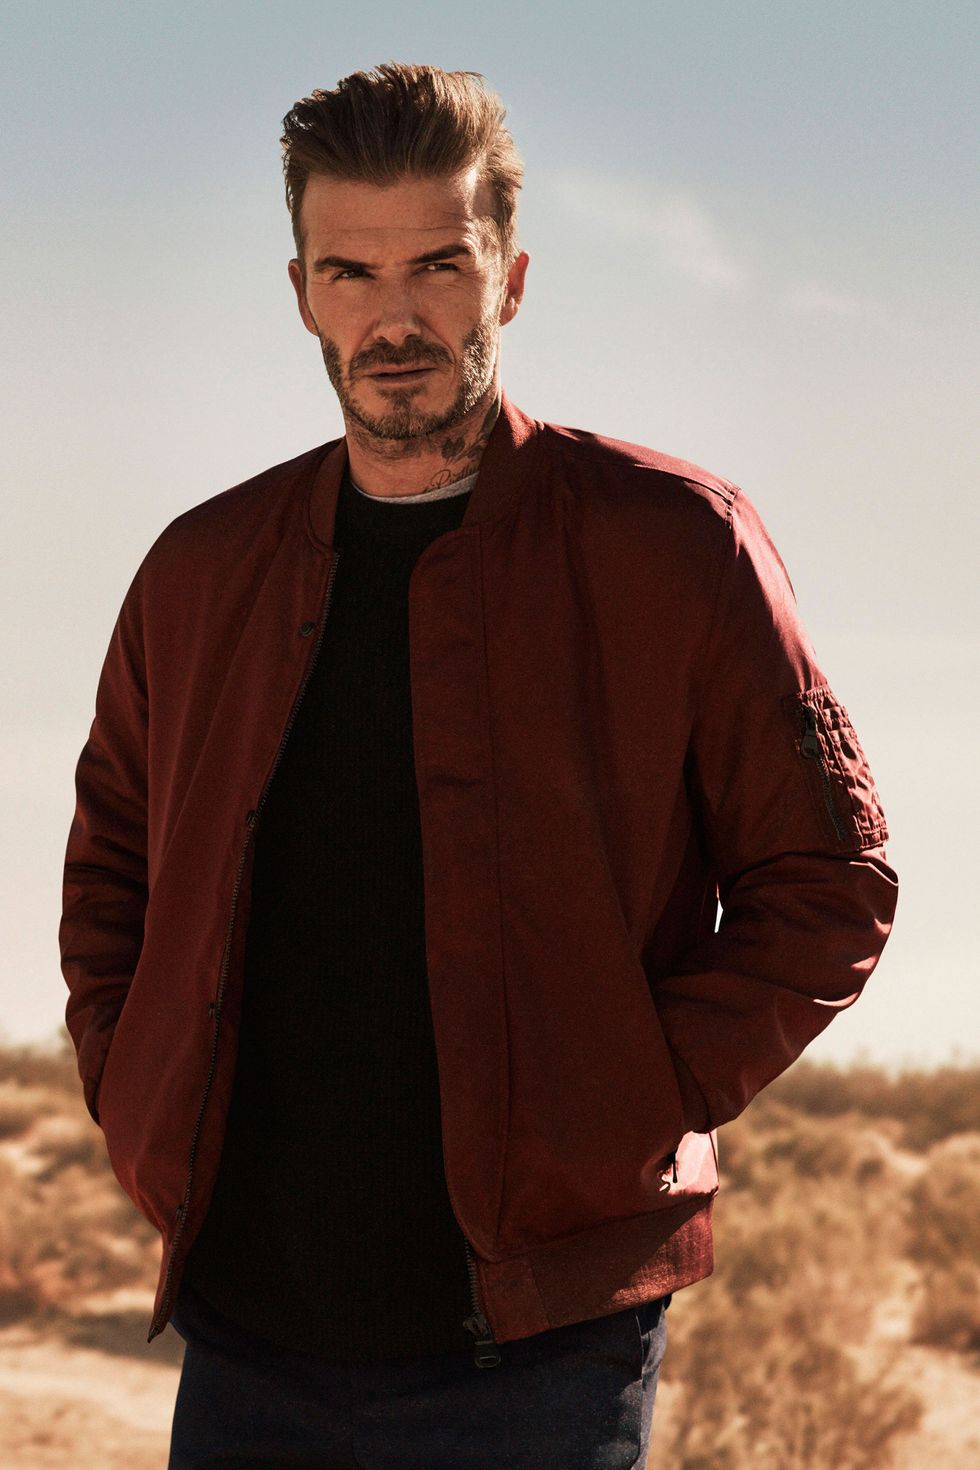 David Beckham's H&M advert